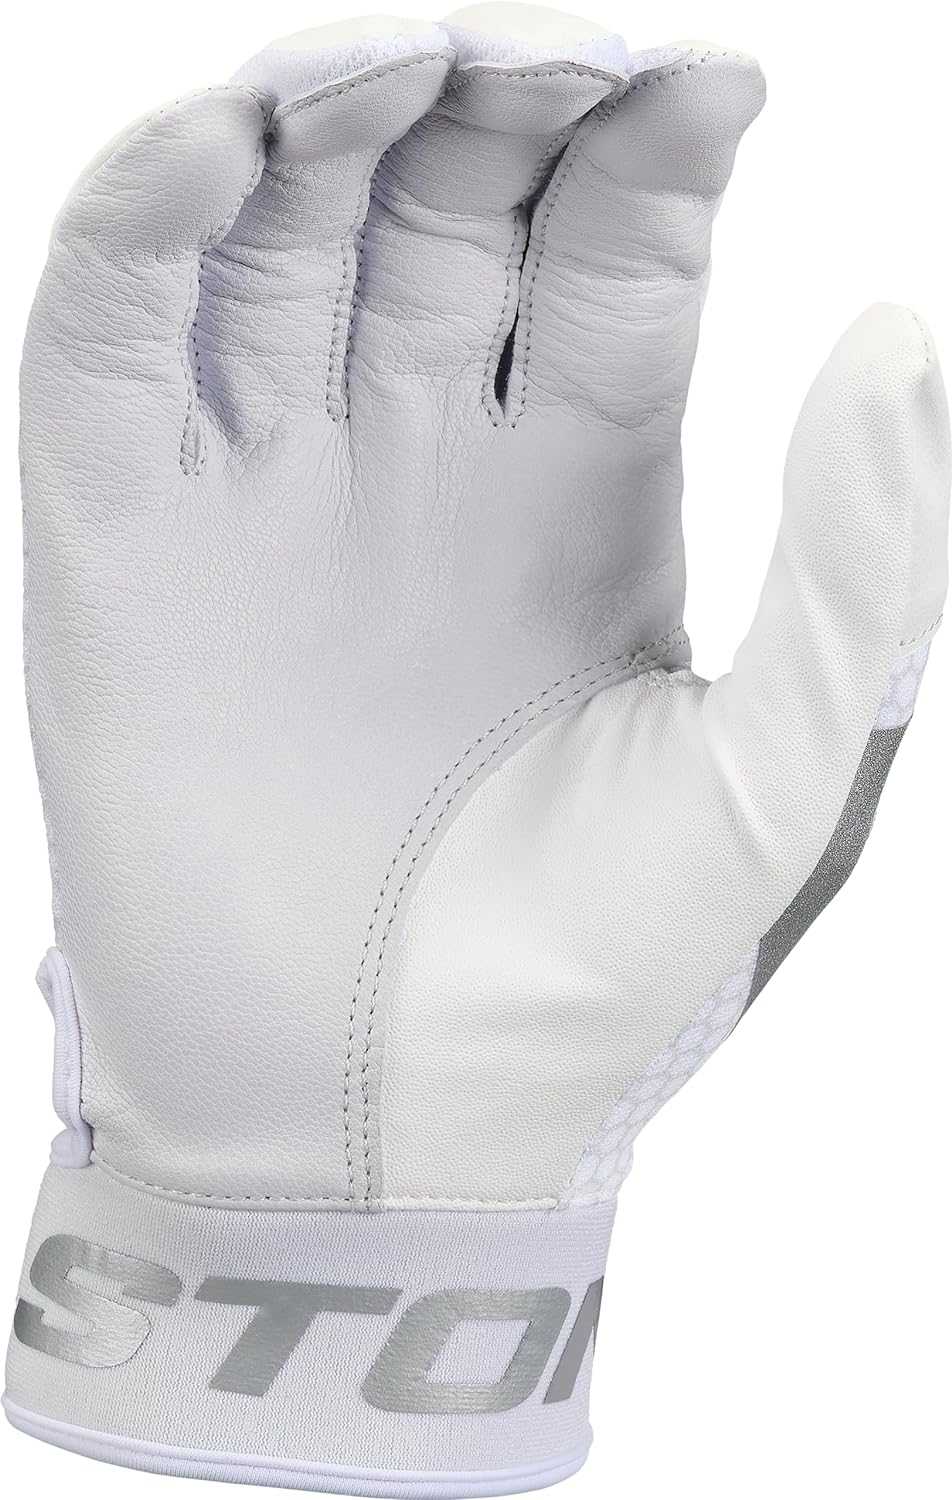 Easton MAV GT Batting Gloves - White - HIT a Double